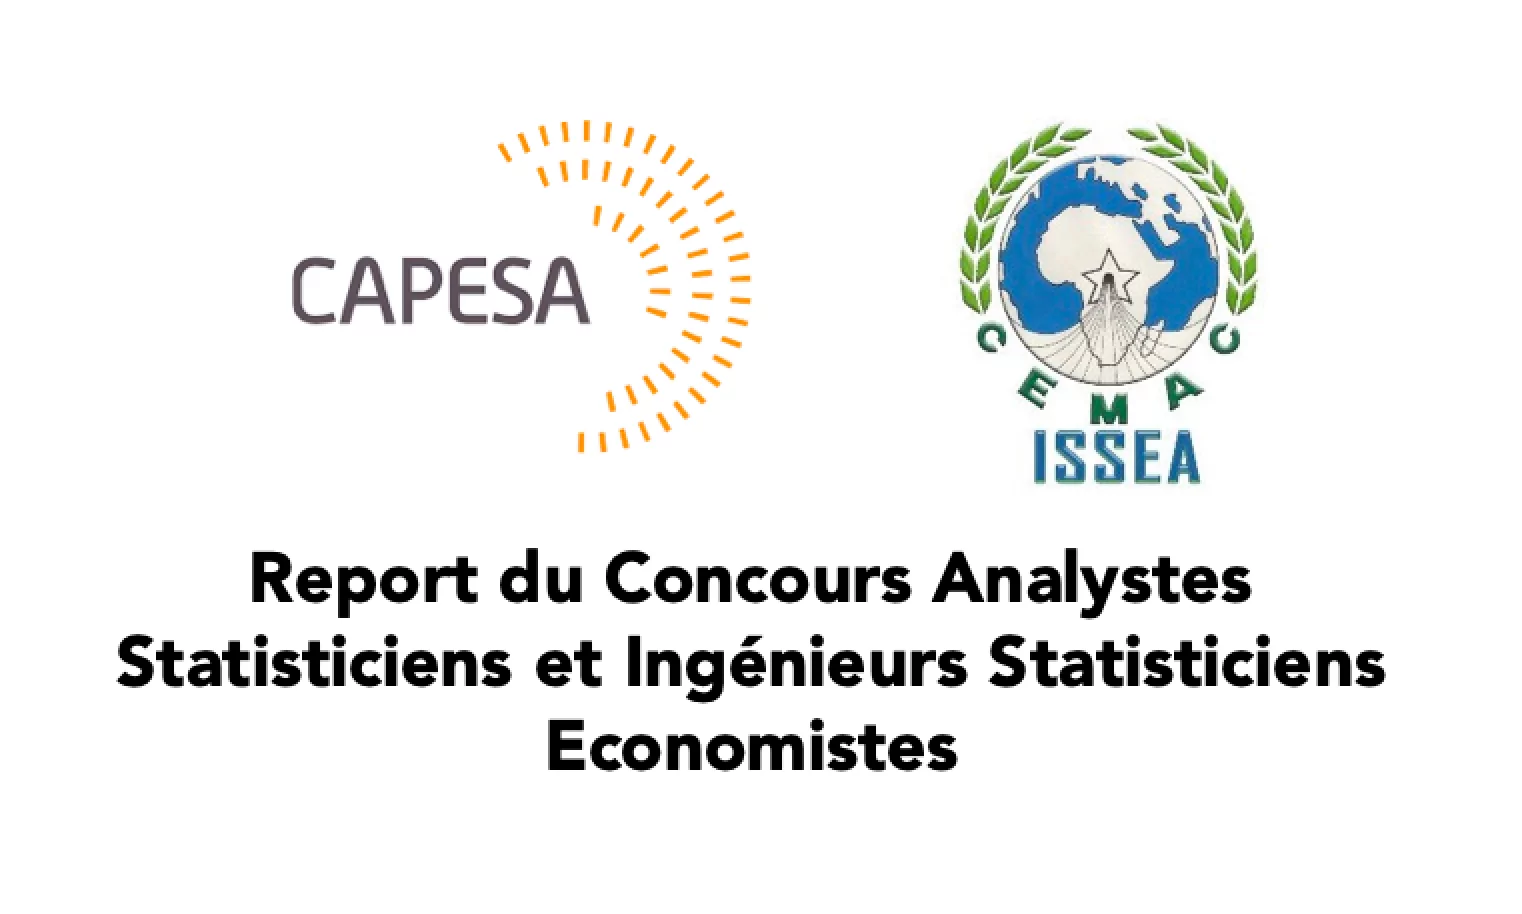 Report du Concours des Analystes Statisticiens et Ingénieurs Statisticiens Economistes 2021